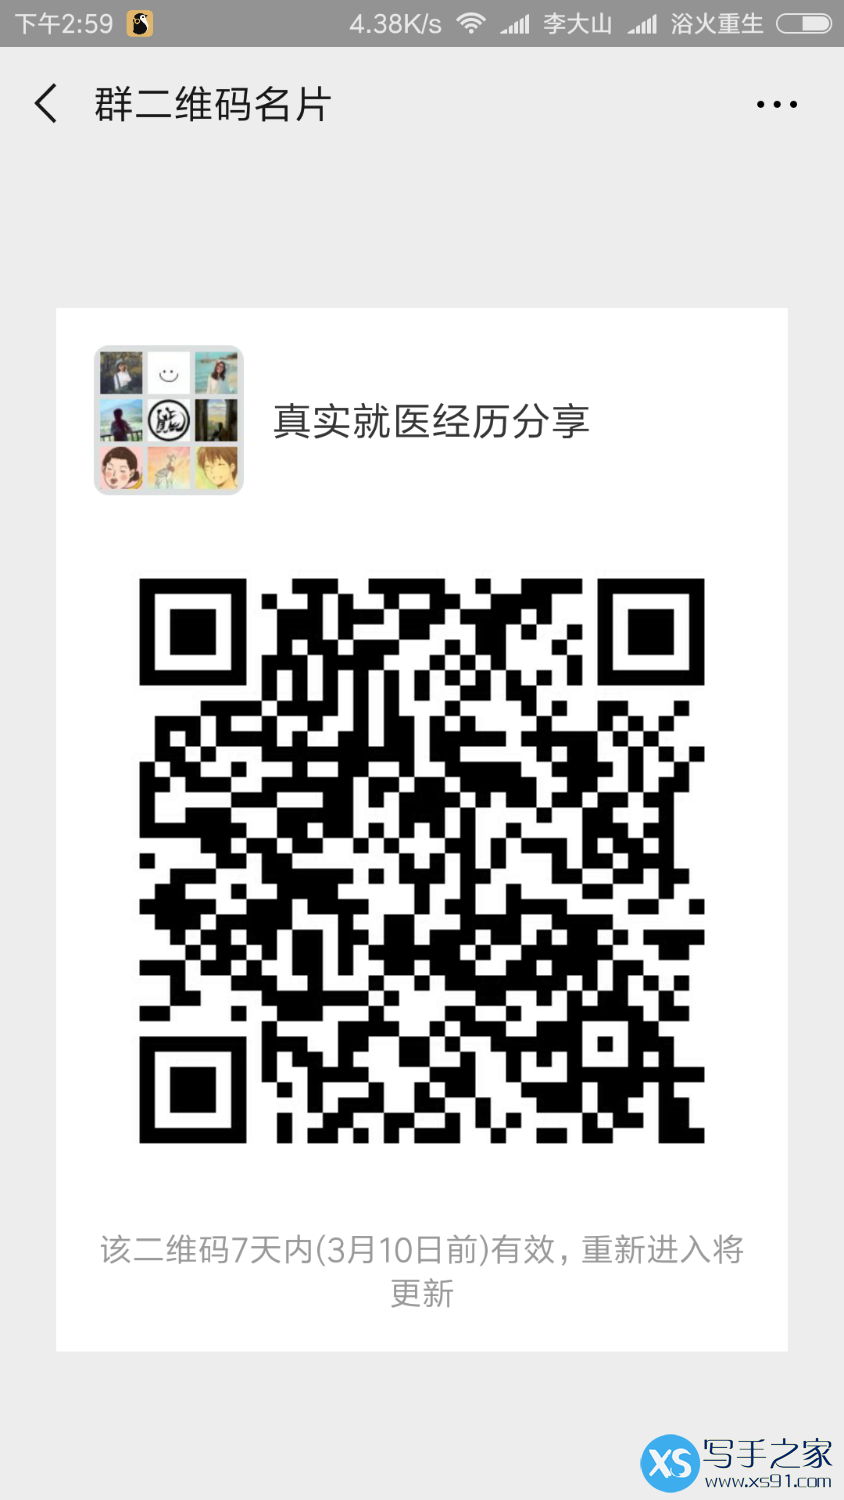 Screenshot_2019-03-03-14-59-10-405_com.tencent.mm.png